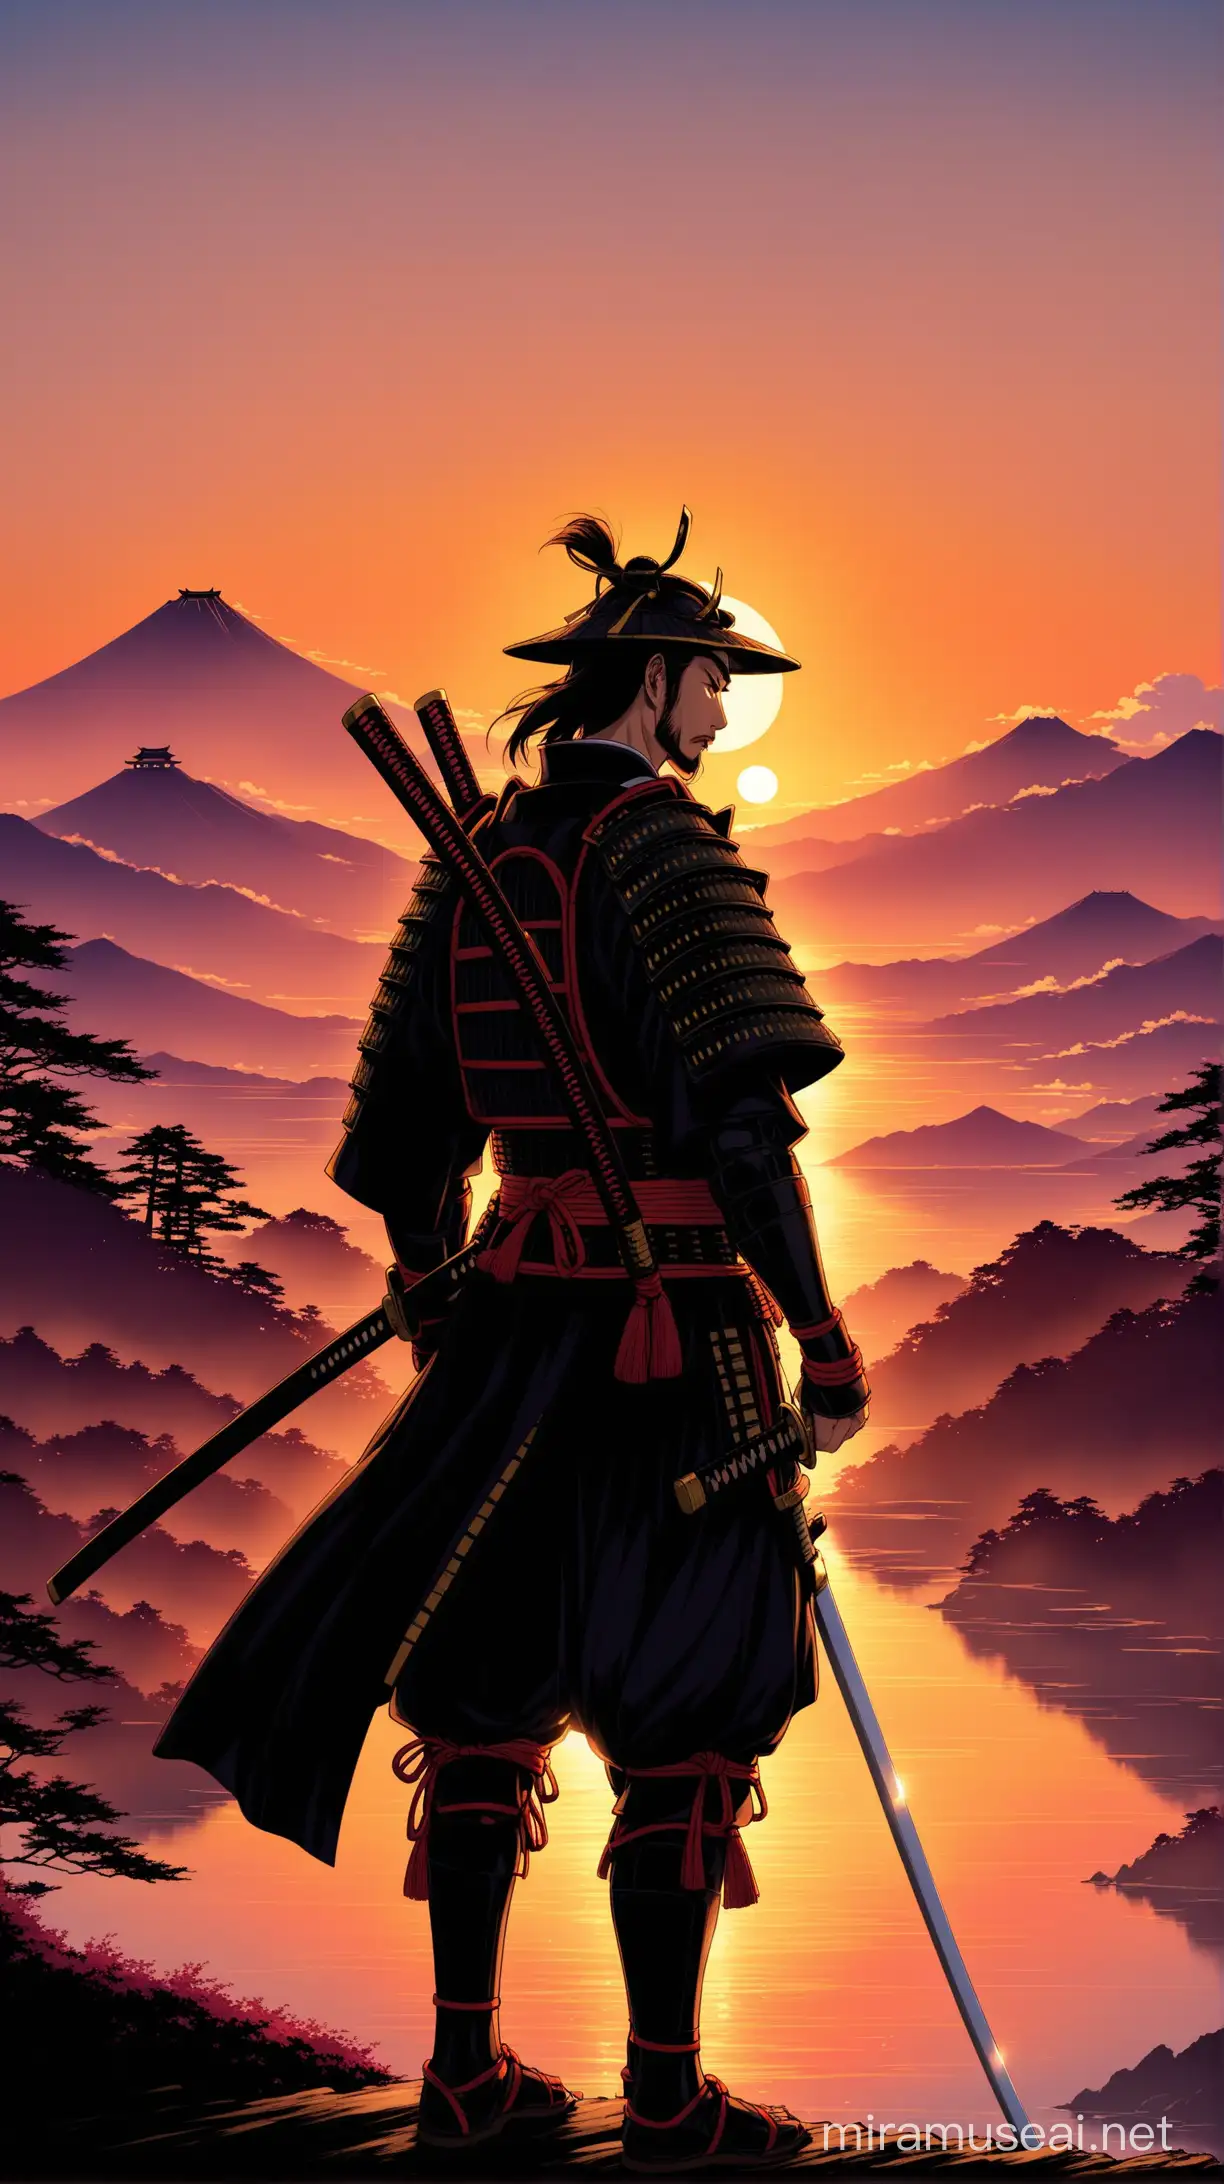 A samurai at sunset in Japan